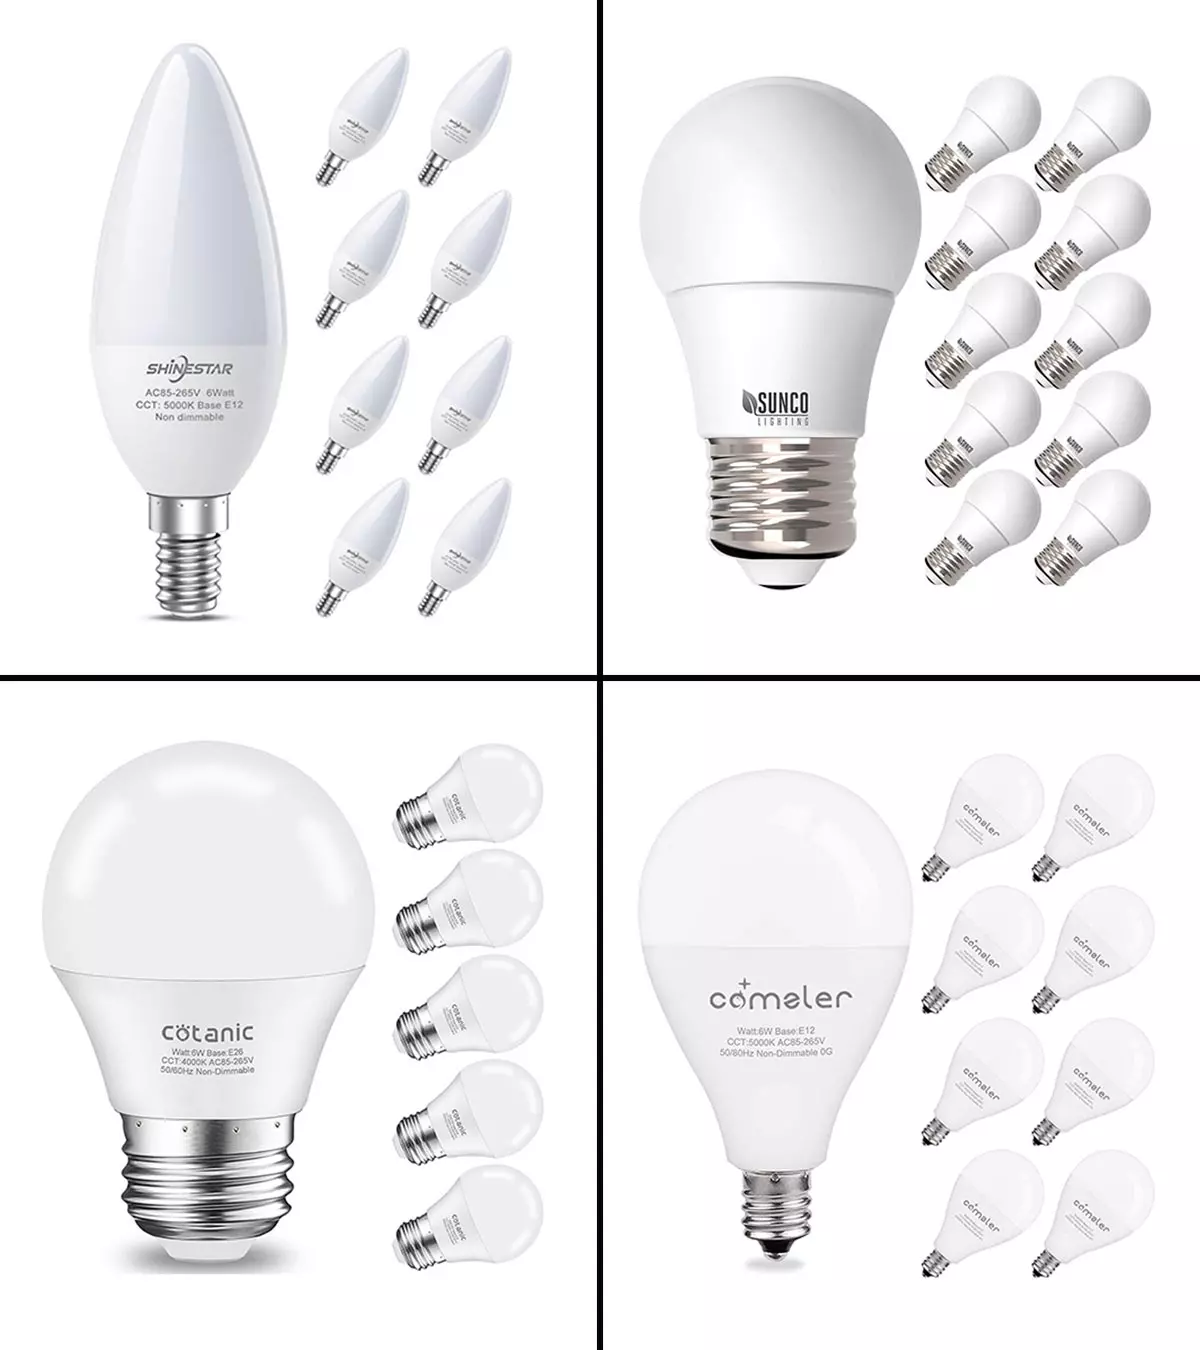 15 Best Light Bulbs For Ceiling Fans